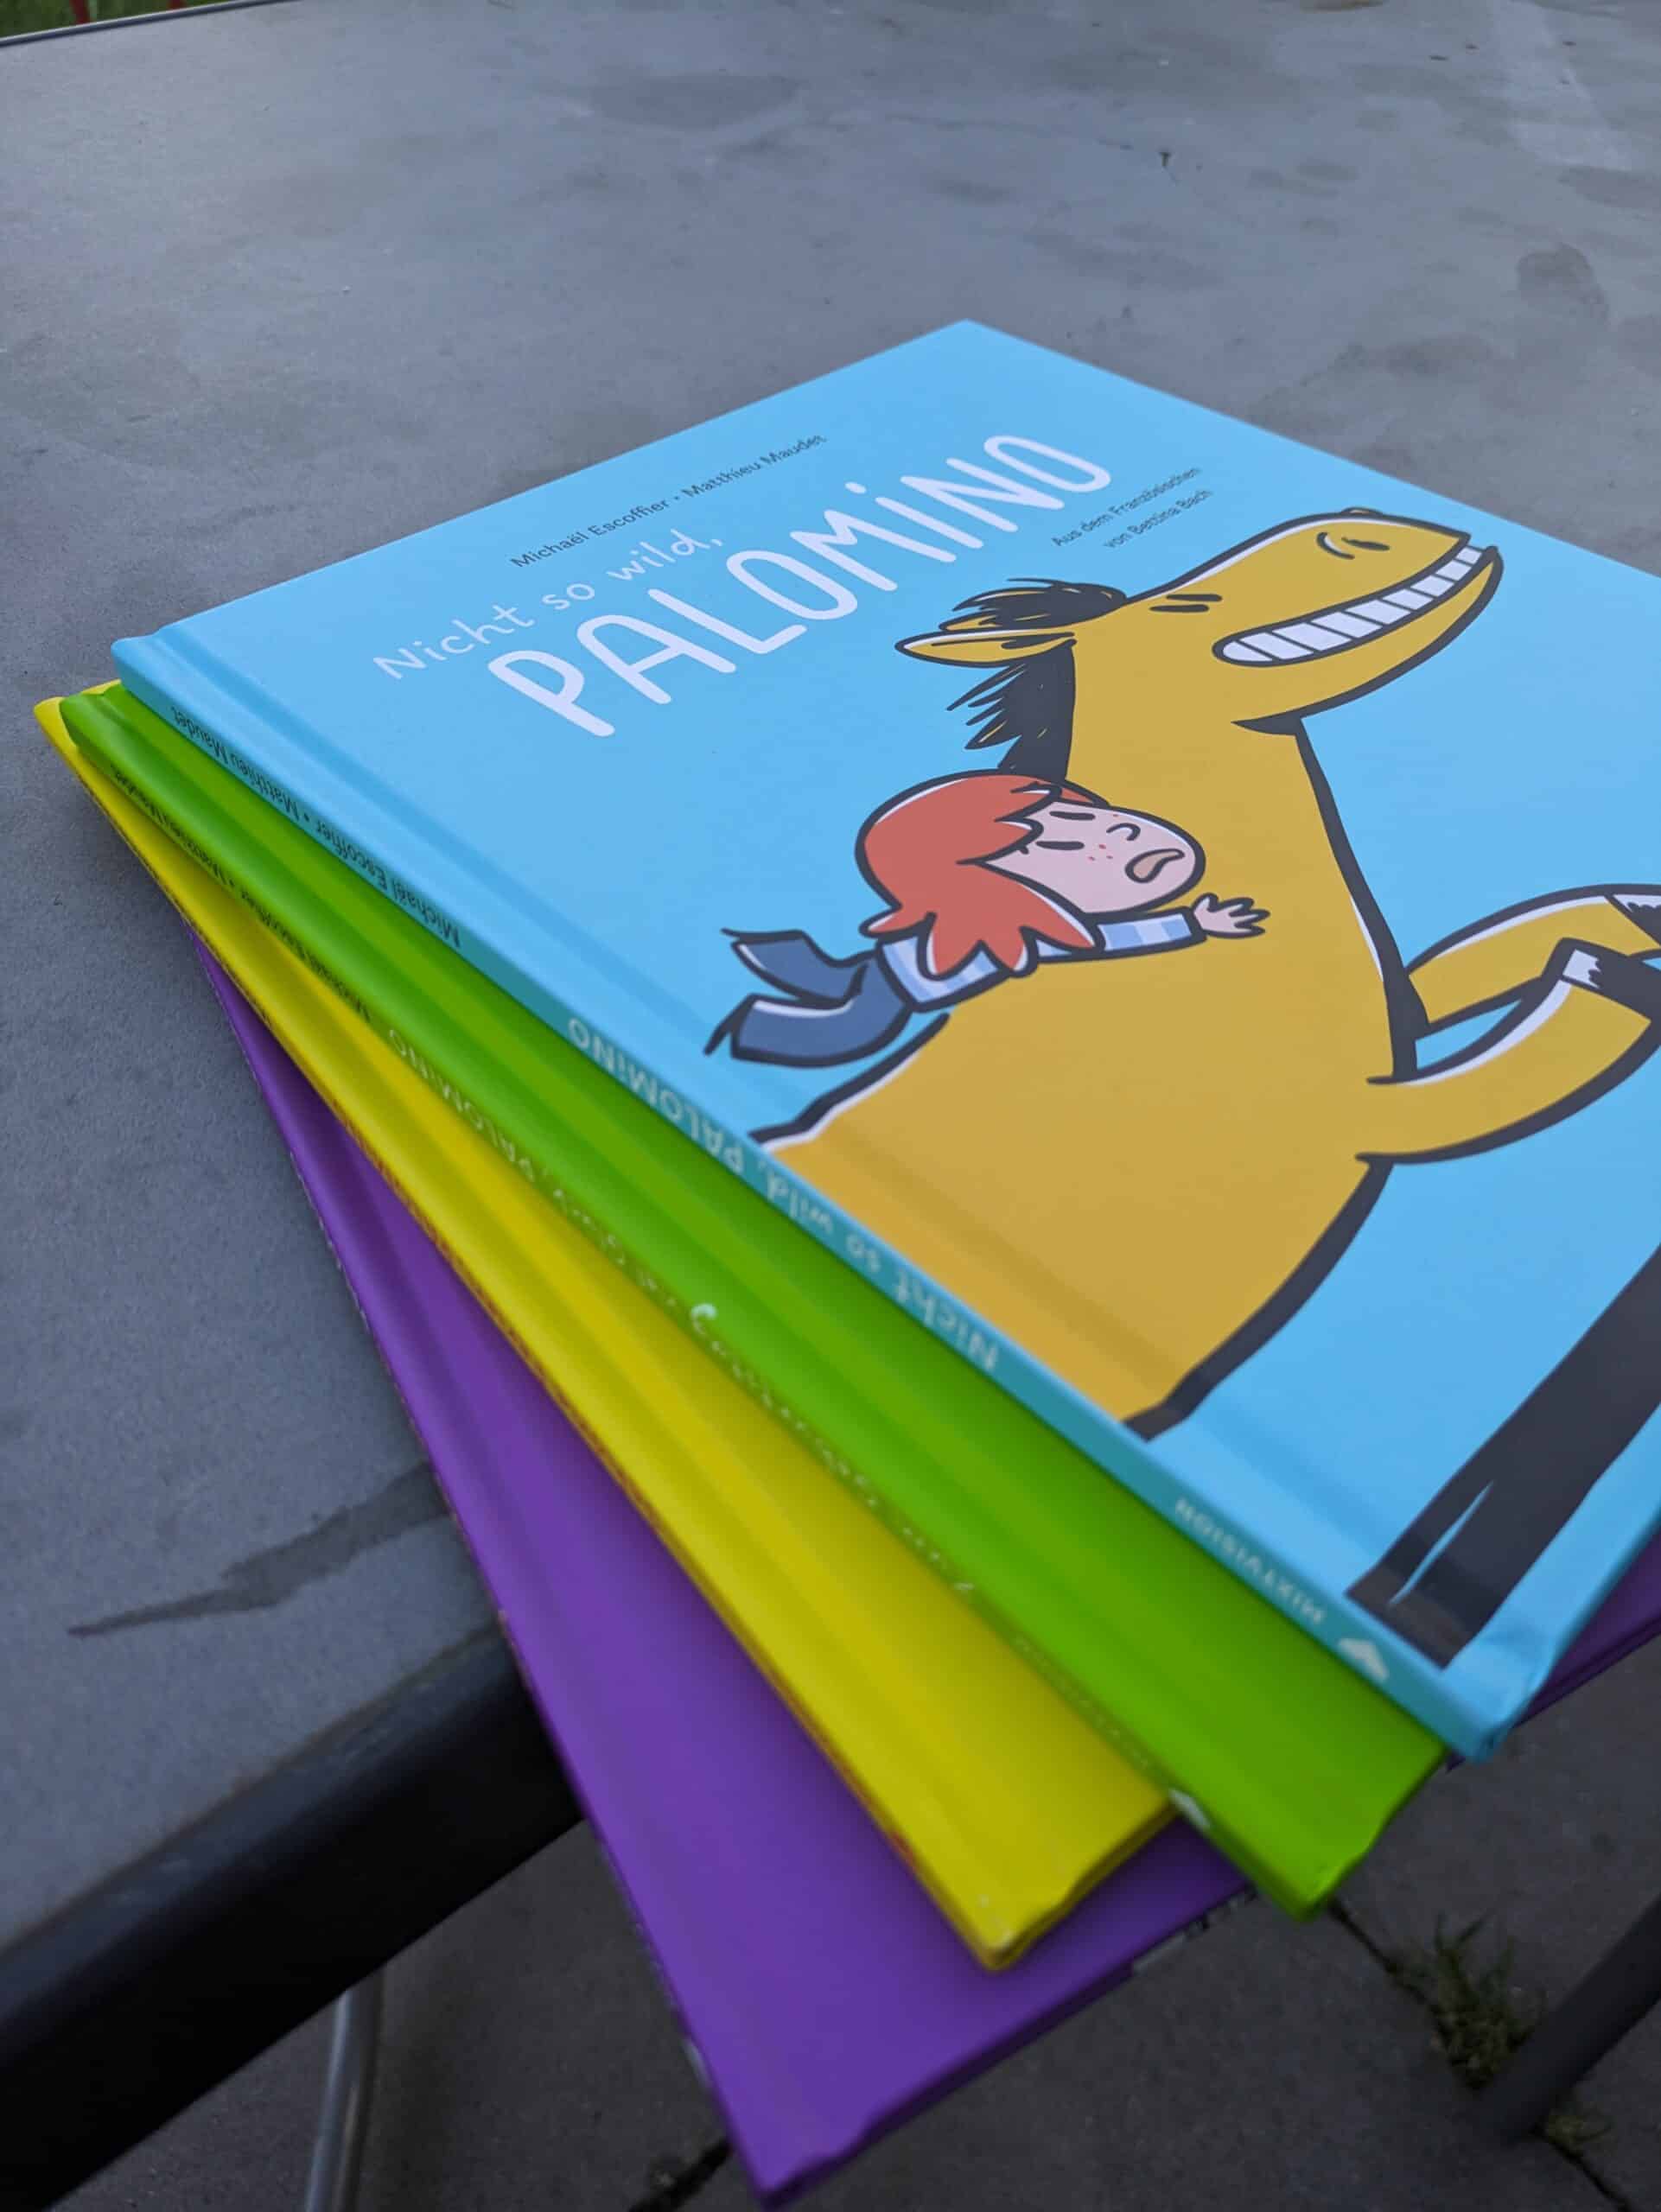 Palomino Kinderbuch aus dem mixtvision Verlag